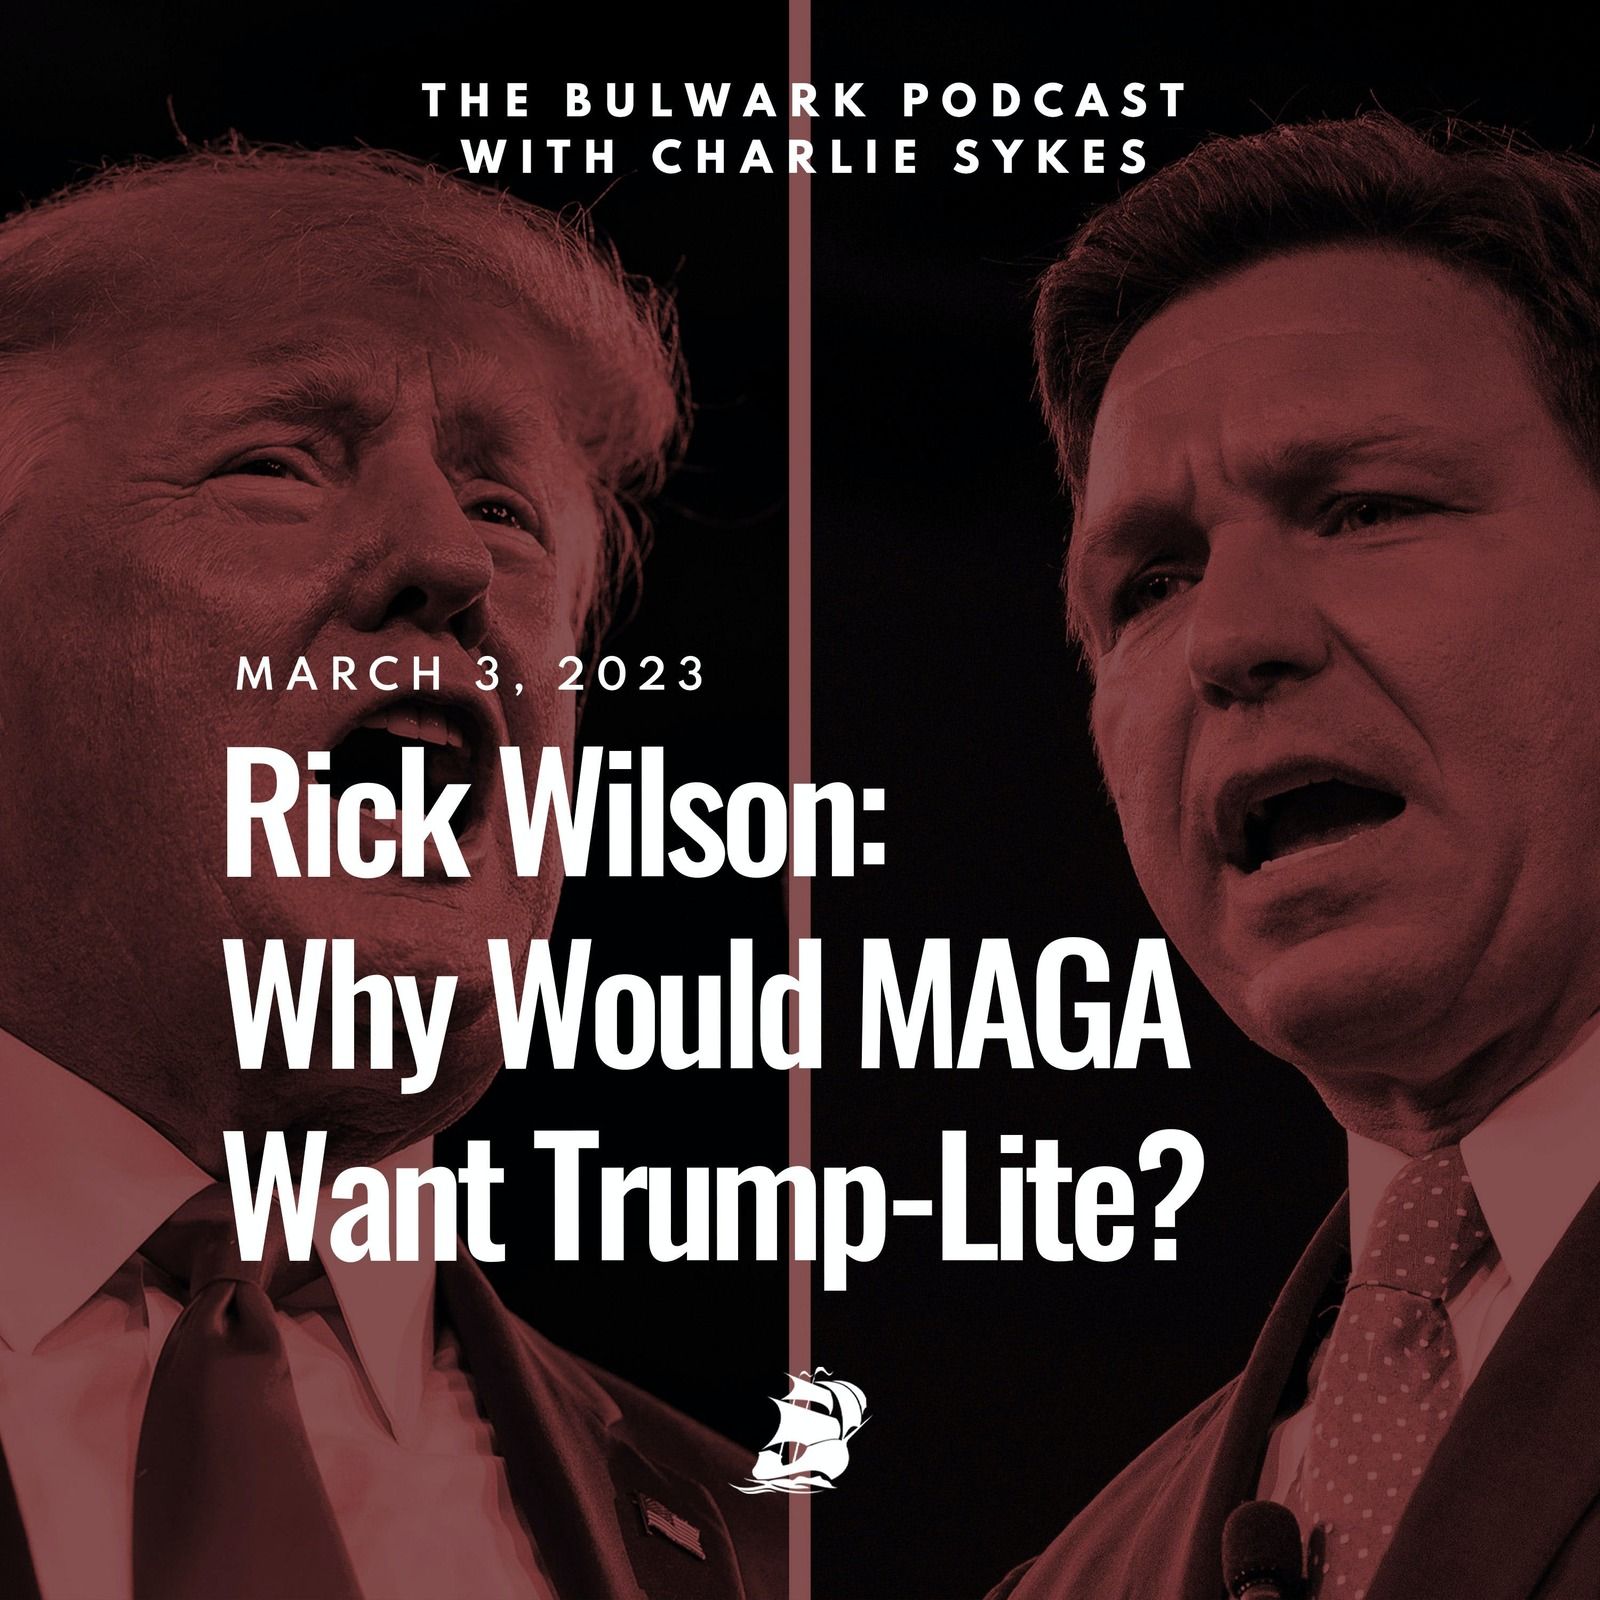 Rick Wilson: Why Would MAGA Want Trump-Lite?